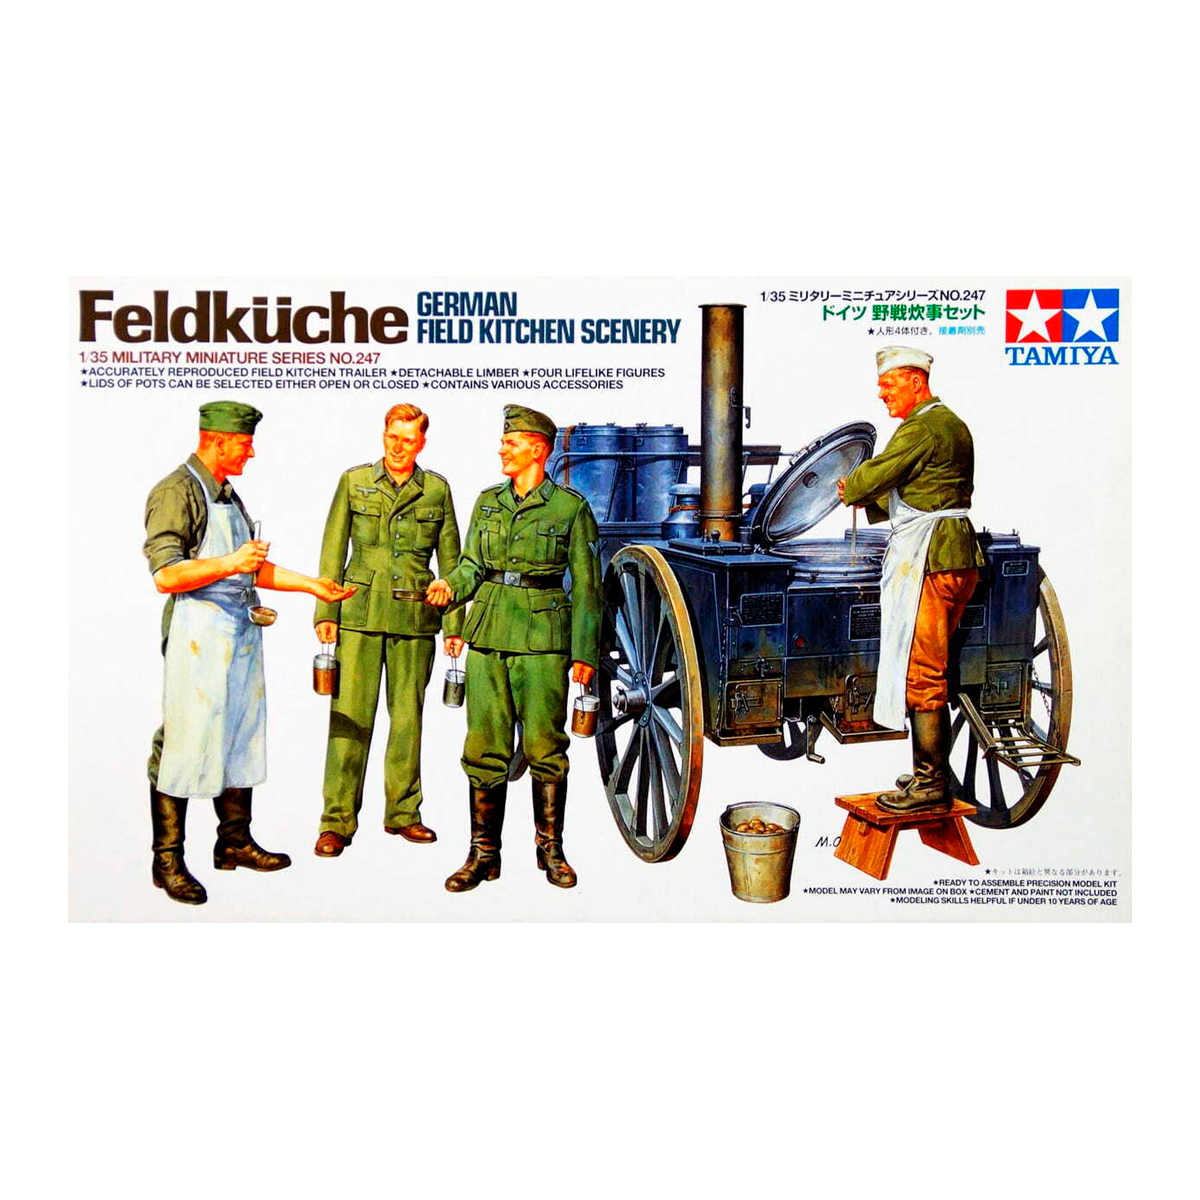 1/35 German Field Kitchen Scenery